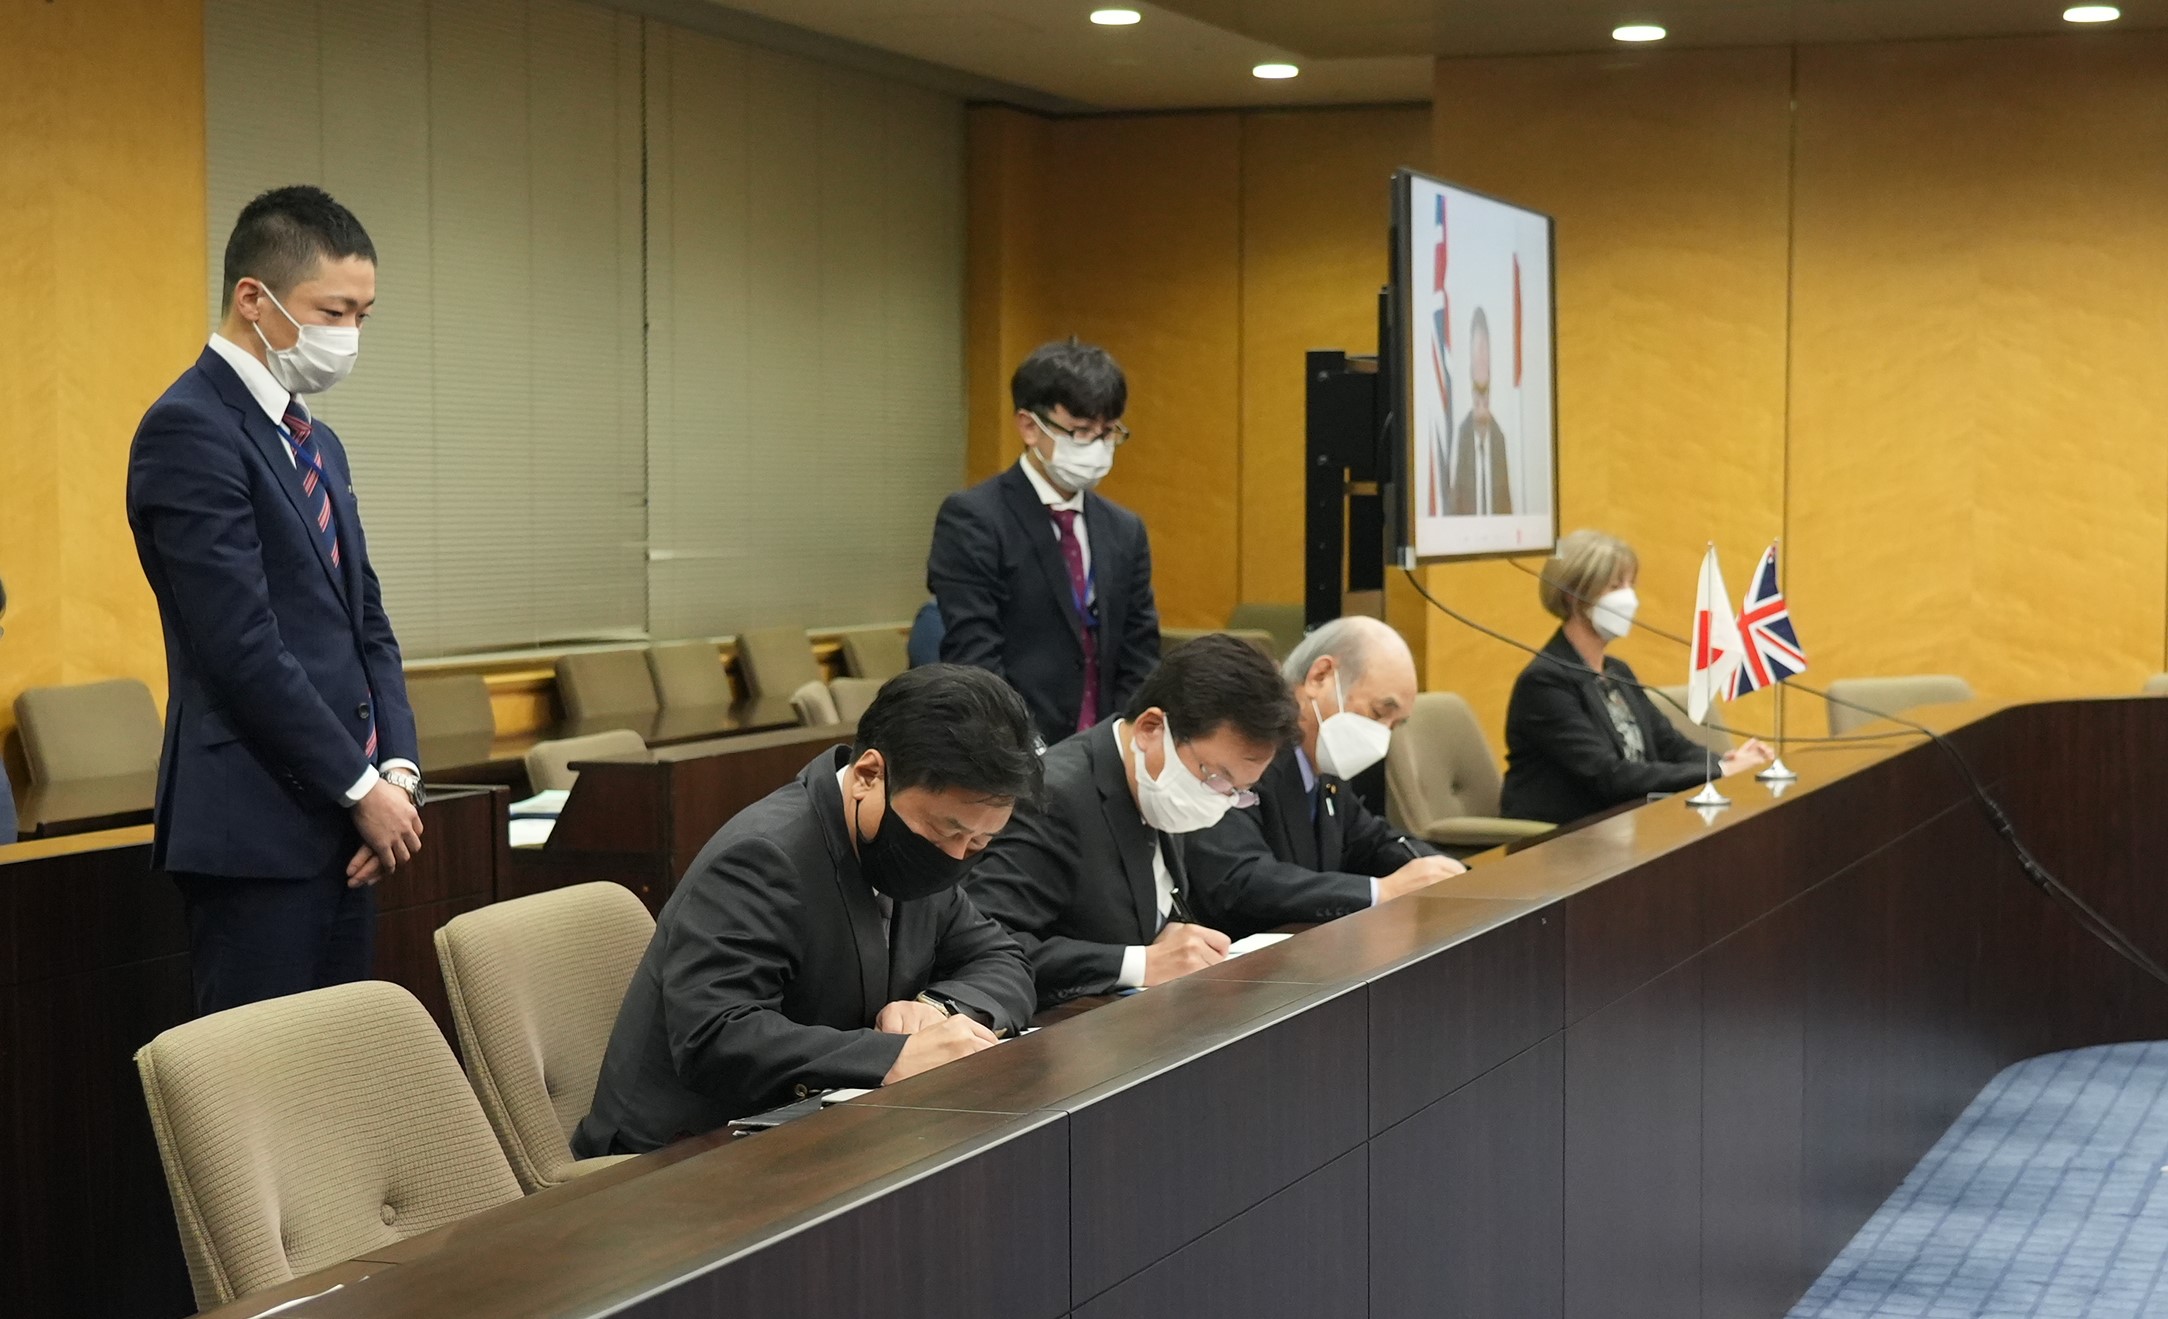 左から、平井経済産業審議官、大串デジタル副大臣、柘植総務副大臣、テレビに映されたスカリーDCMS政務次官が並んで机に向かって座っている。4名とも合意文書にサインをしている。